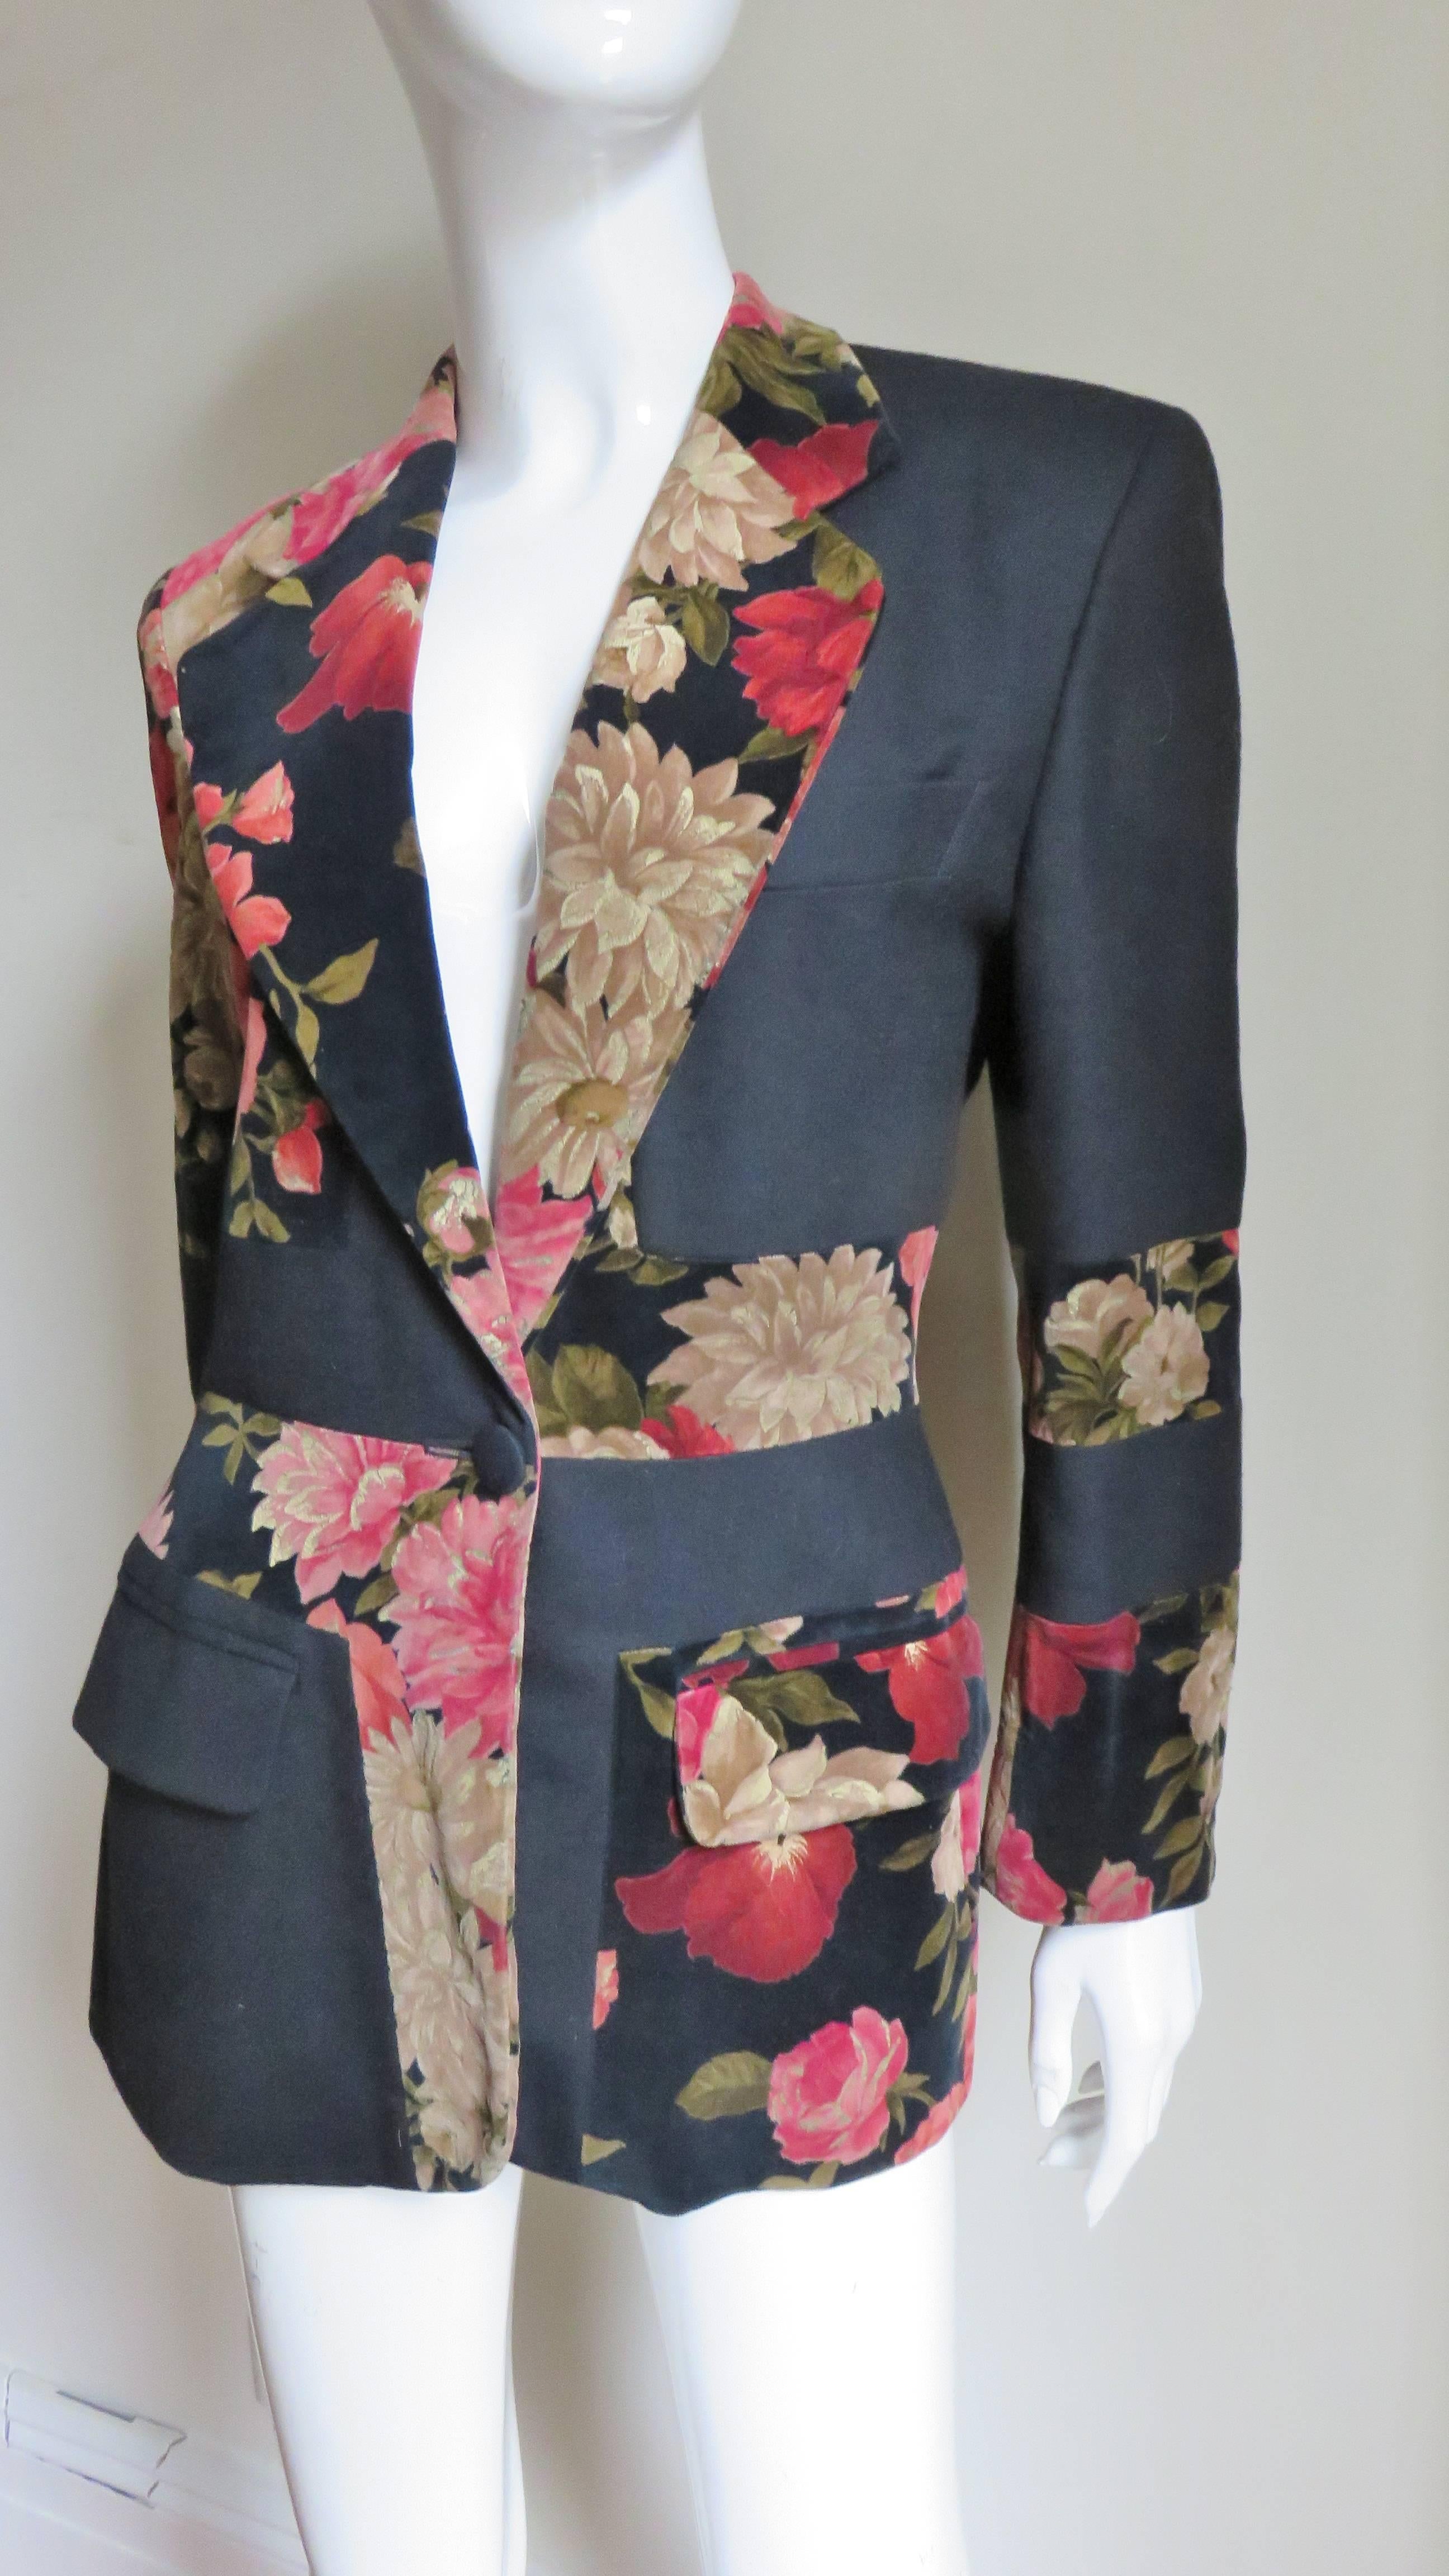 Une fabuleuse veste de Moschino Couture. Il s'agit d'une veste de style blazer avec deux poches à rabat sur le devant, une poche poitrine, un col à revers et un léger padding aux épaules. Il présente une alternance de tissus - fleurs rouges et